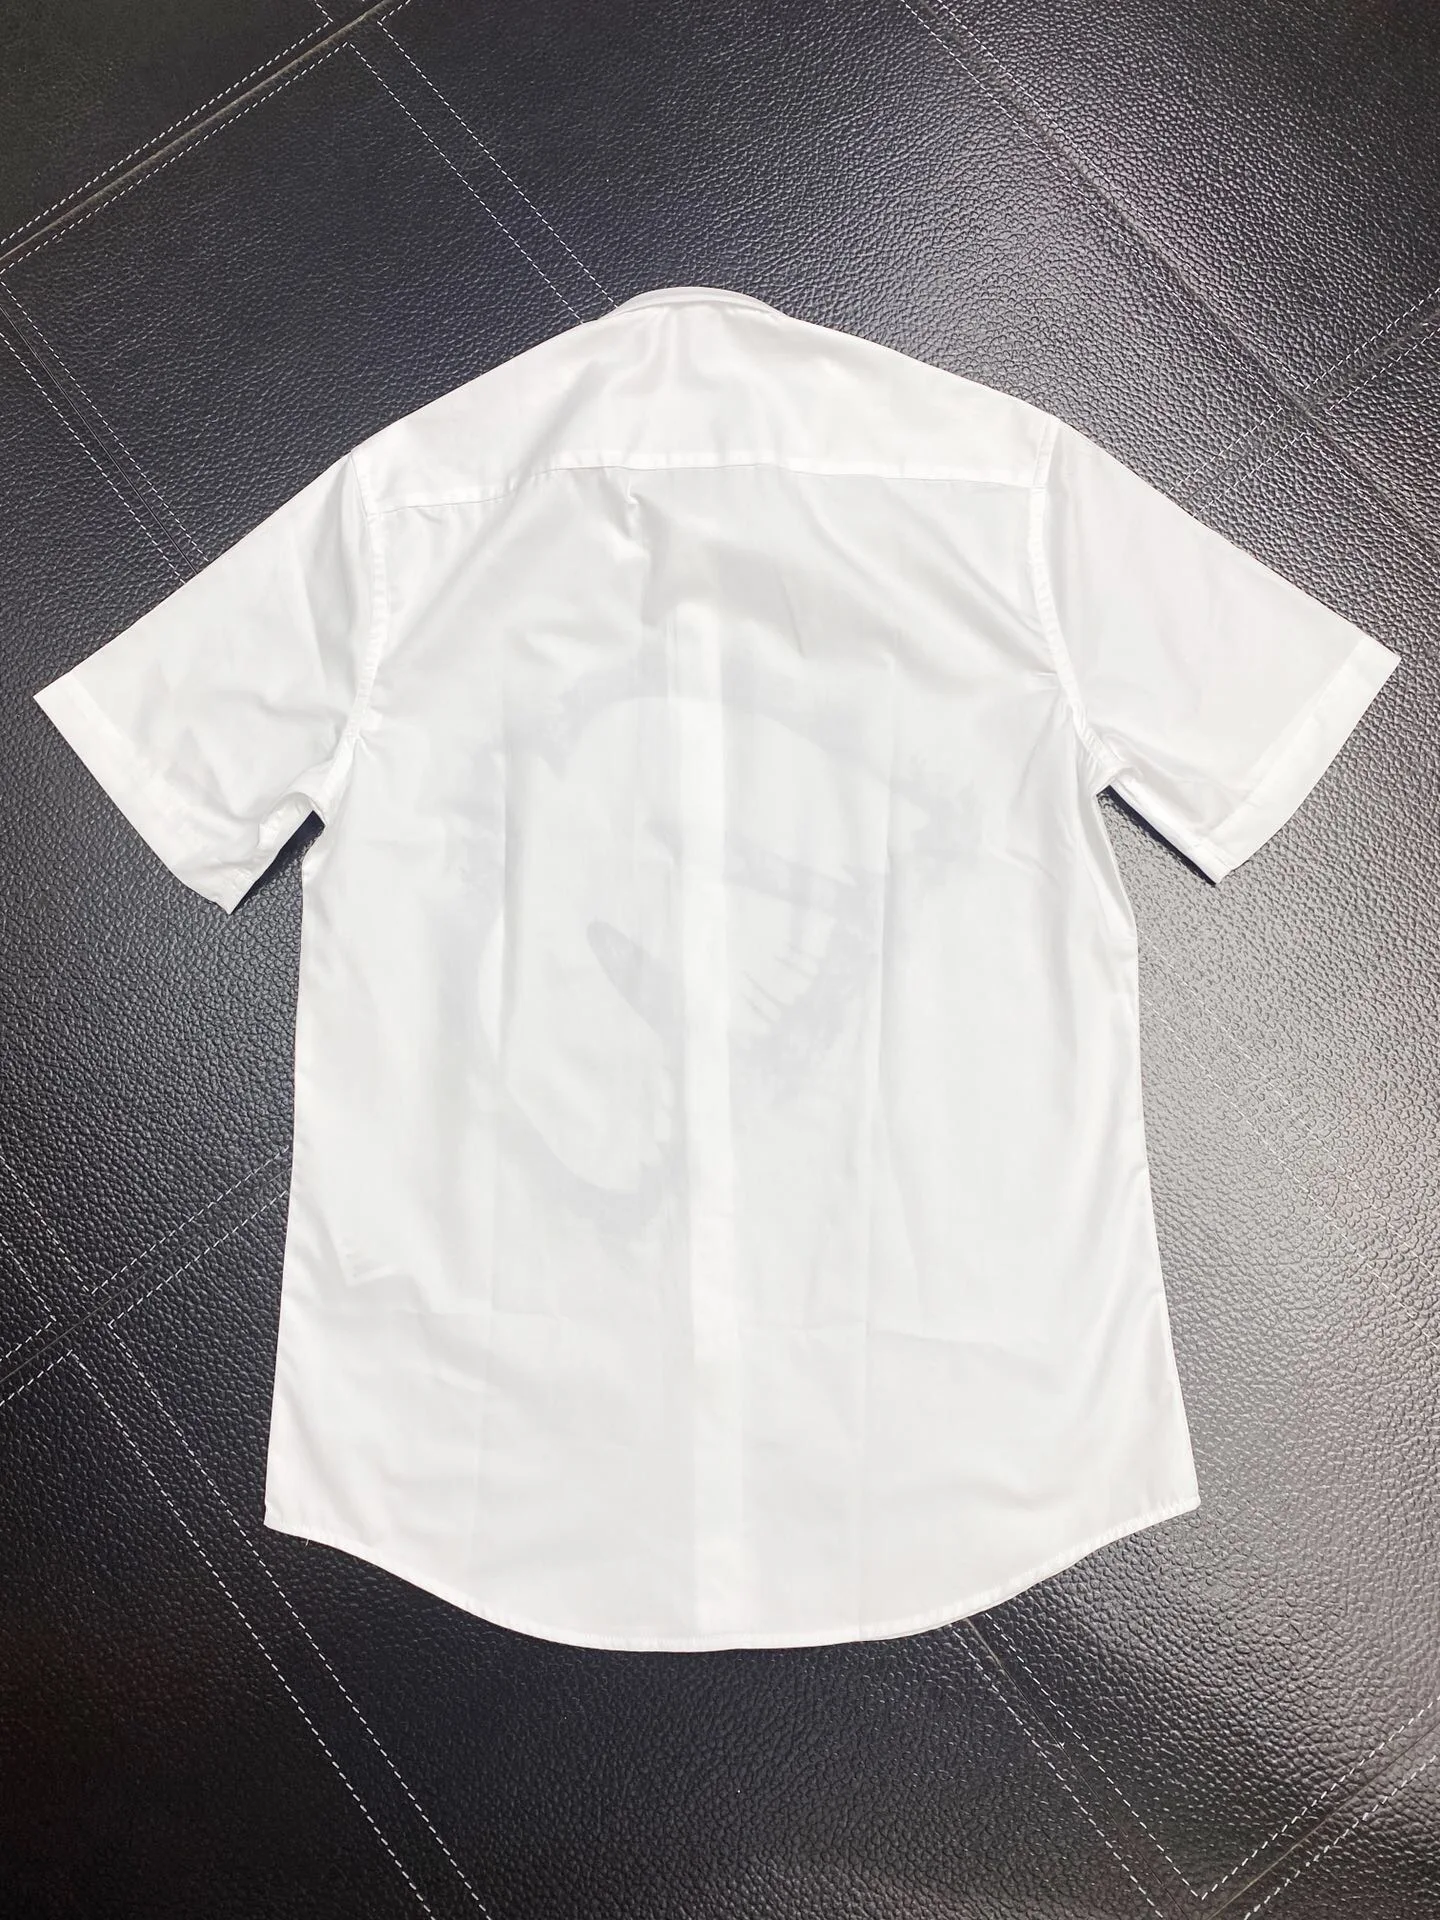 Chemises habillées en coton pour hommes croquis hirondelles imprimer à manches courtes Camisas Masculina décontracté coupe ajustée hommes chemise d'affaires 101662